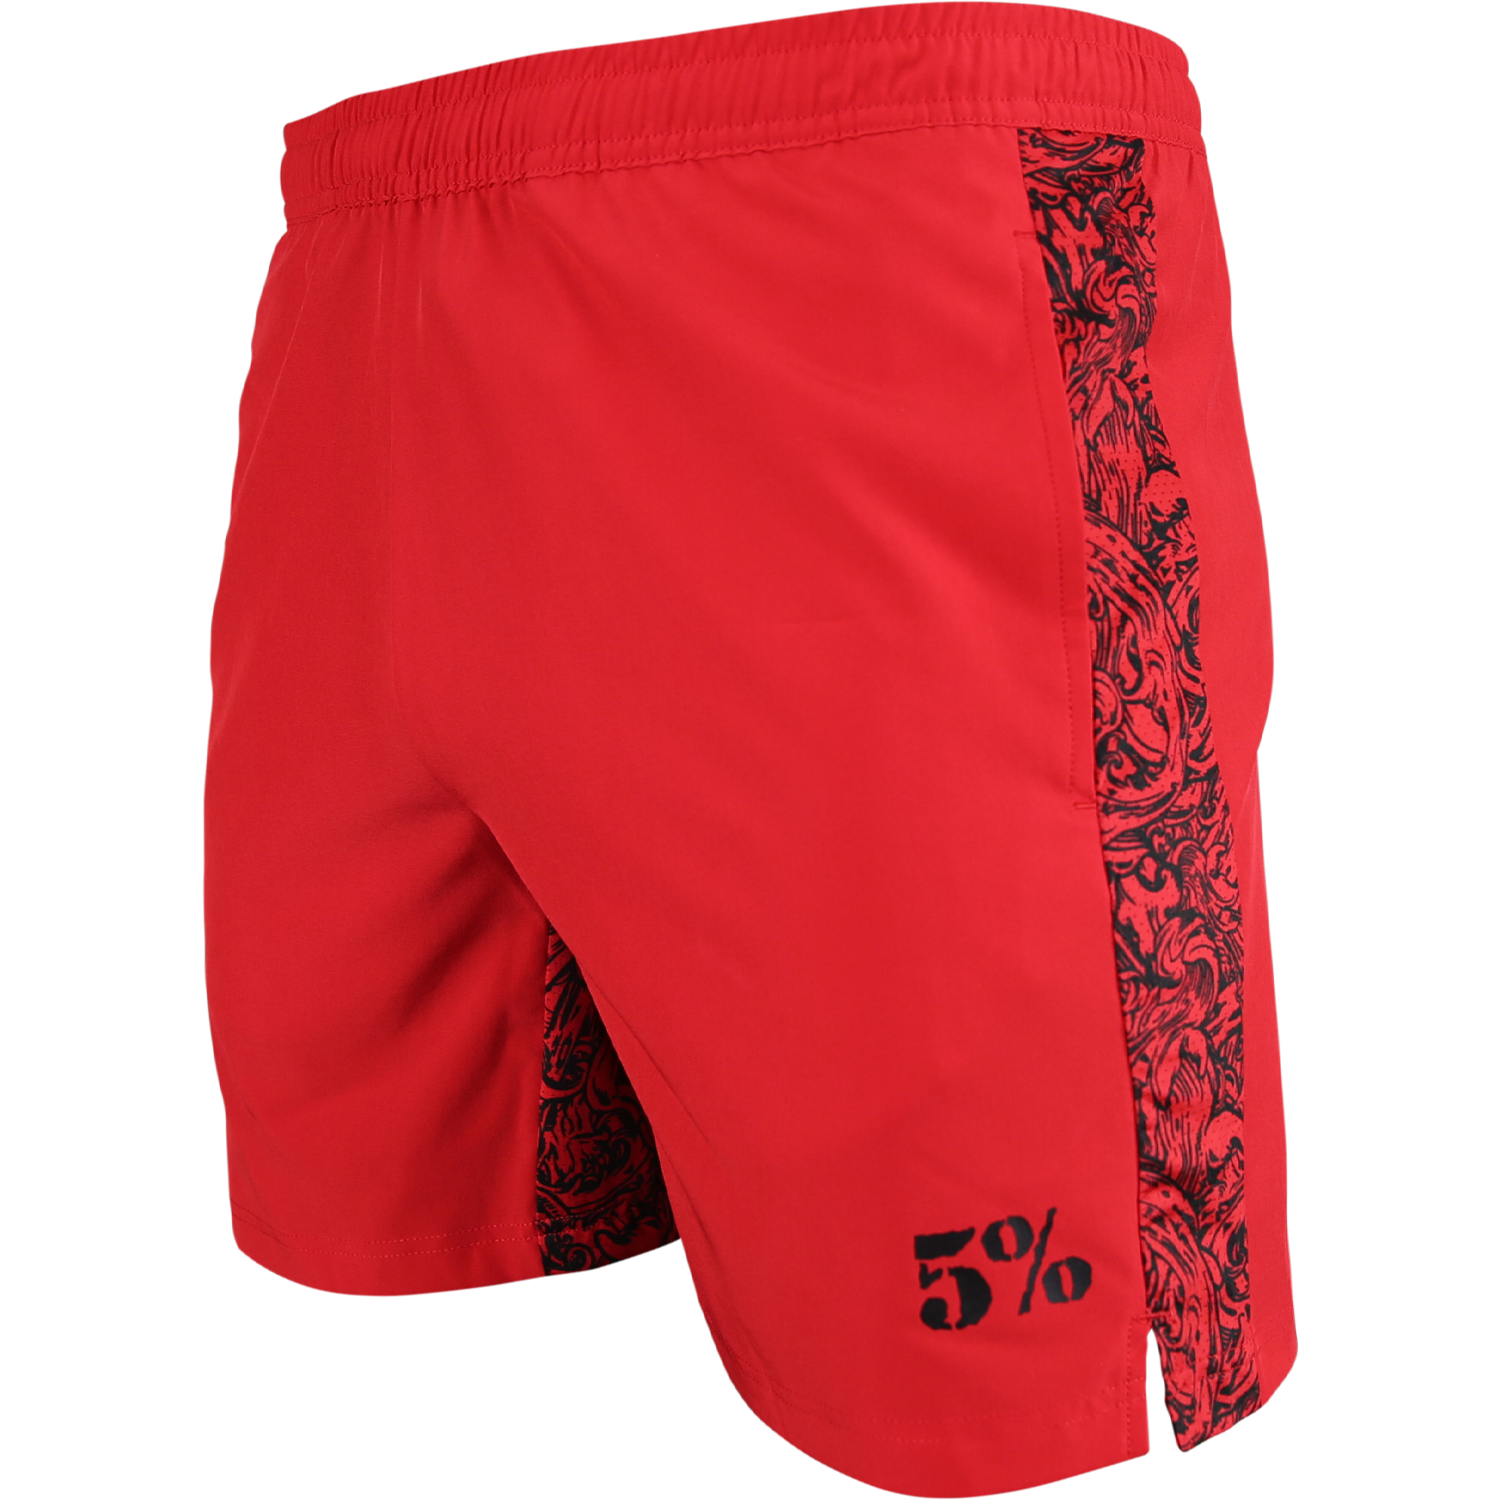 5% Red Lifting Shorts